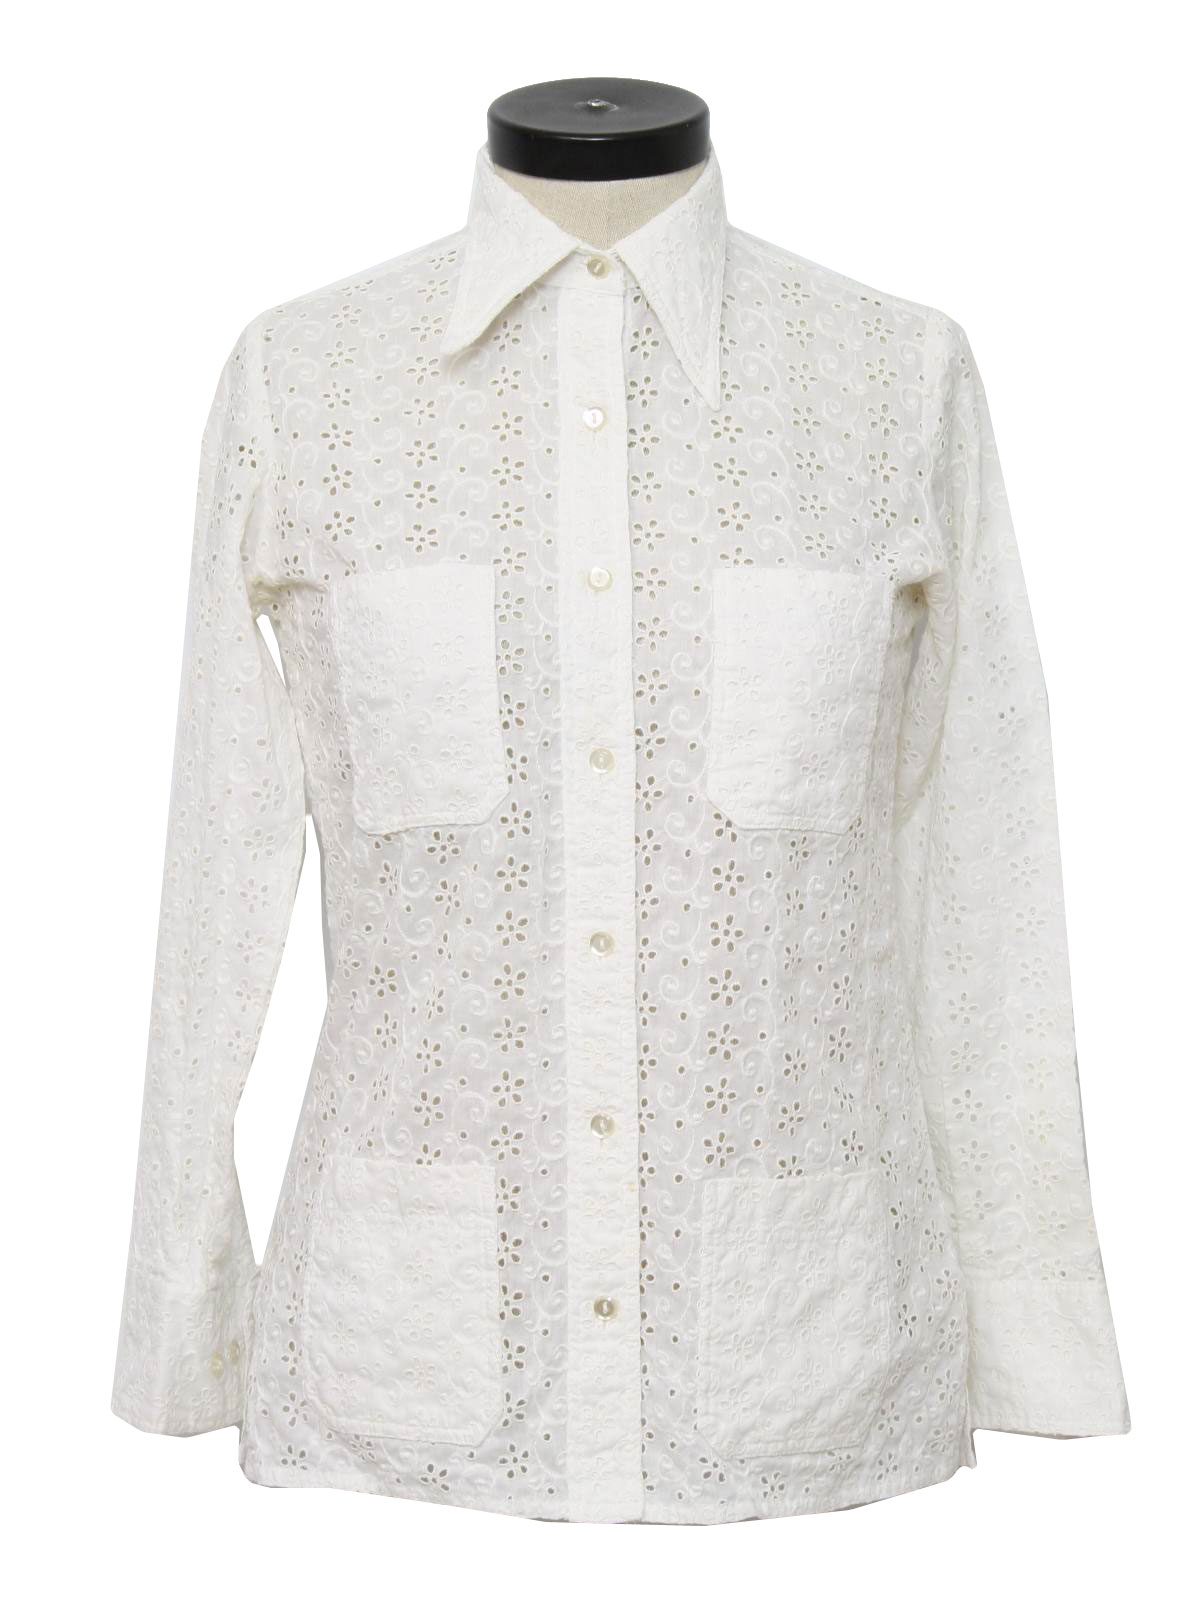 Retro 1970's Shirt (Neiman Marcus) : 70s -Neiman Marcus- Womens white ...